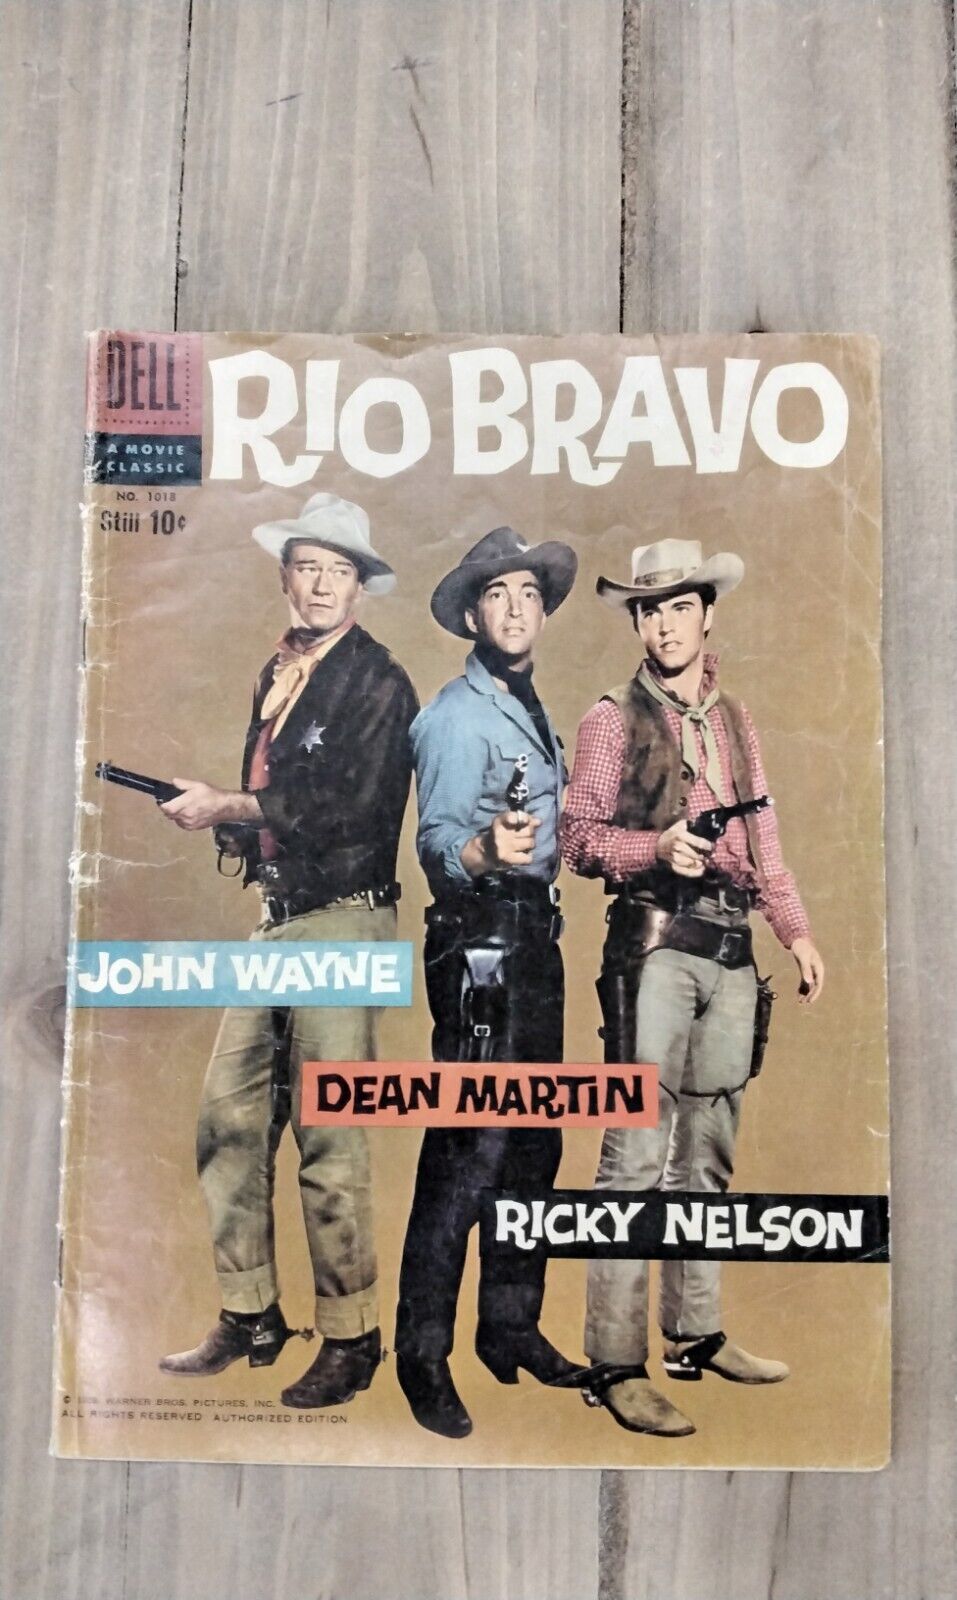 Rio Bravo Comic By Dell No. 1018